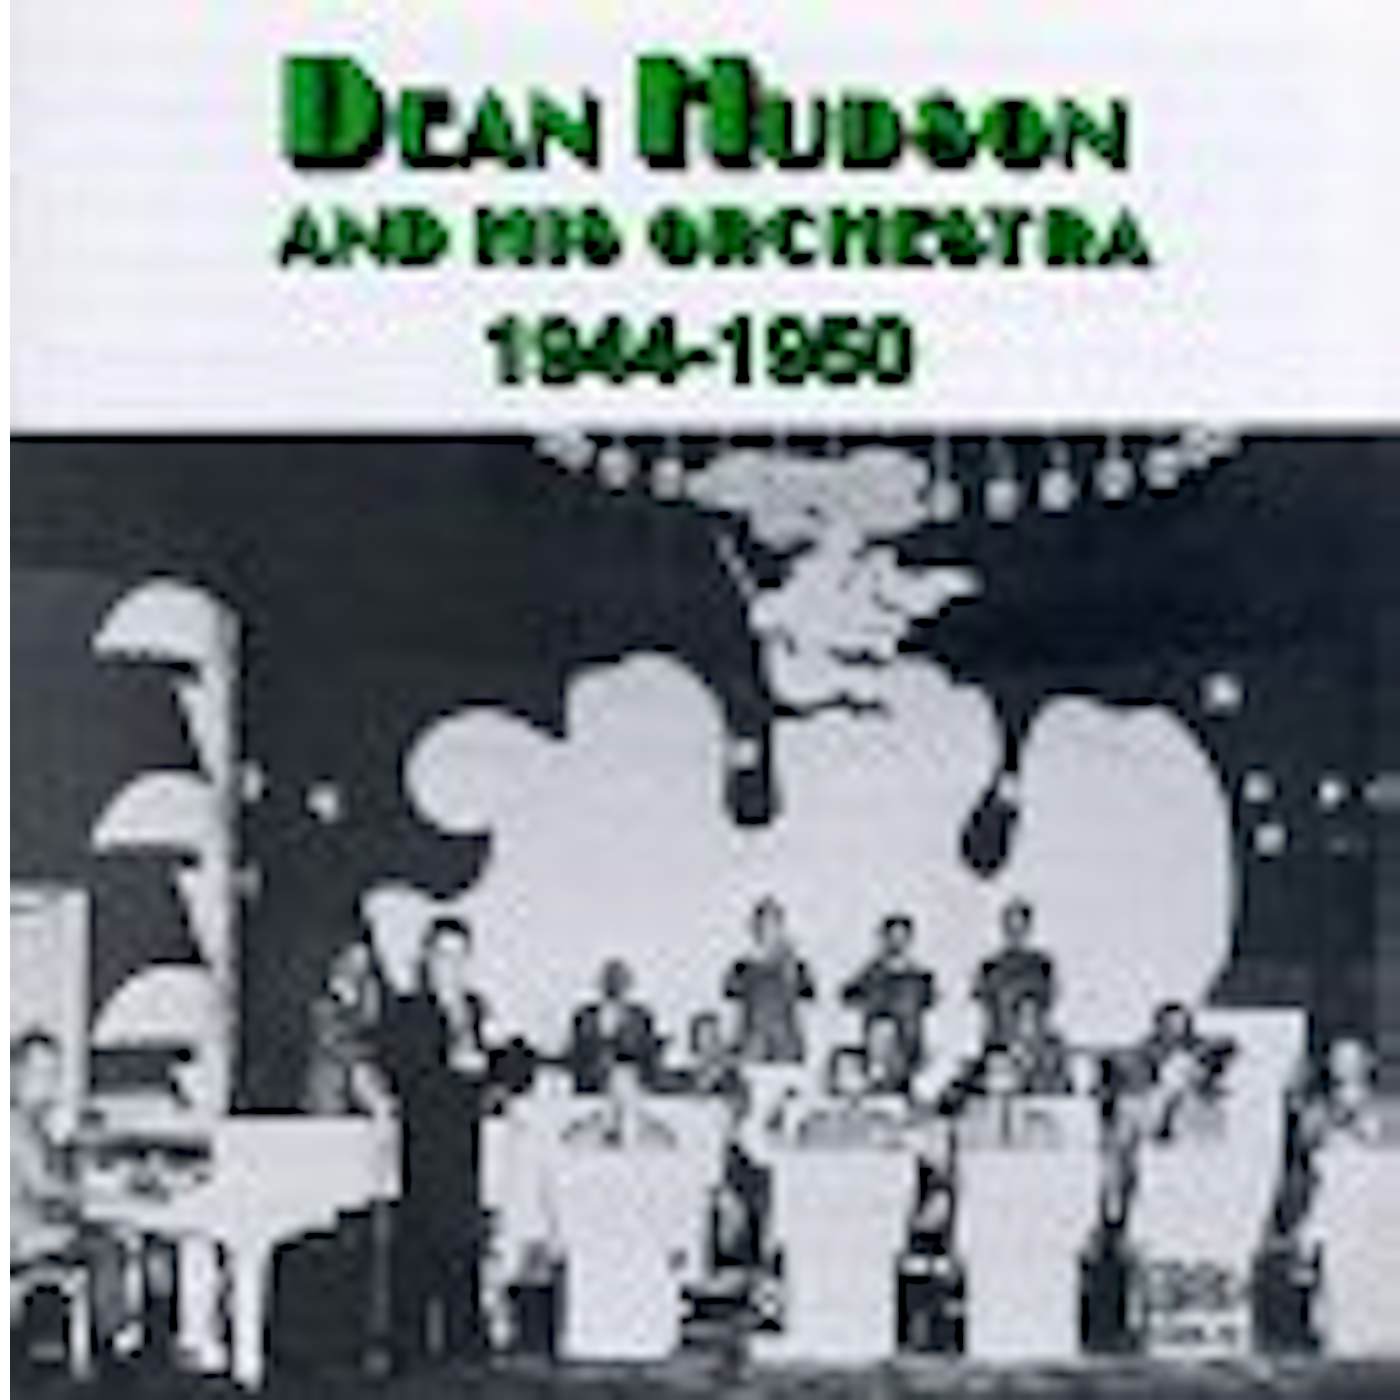 Hudson Dean 1944-1950 CD